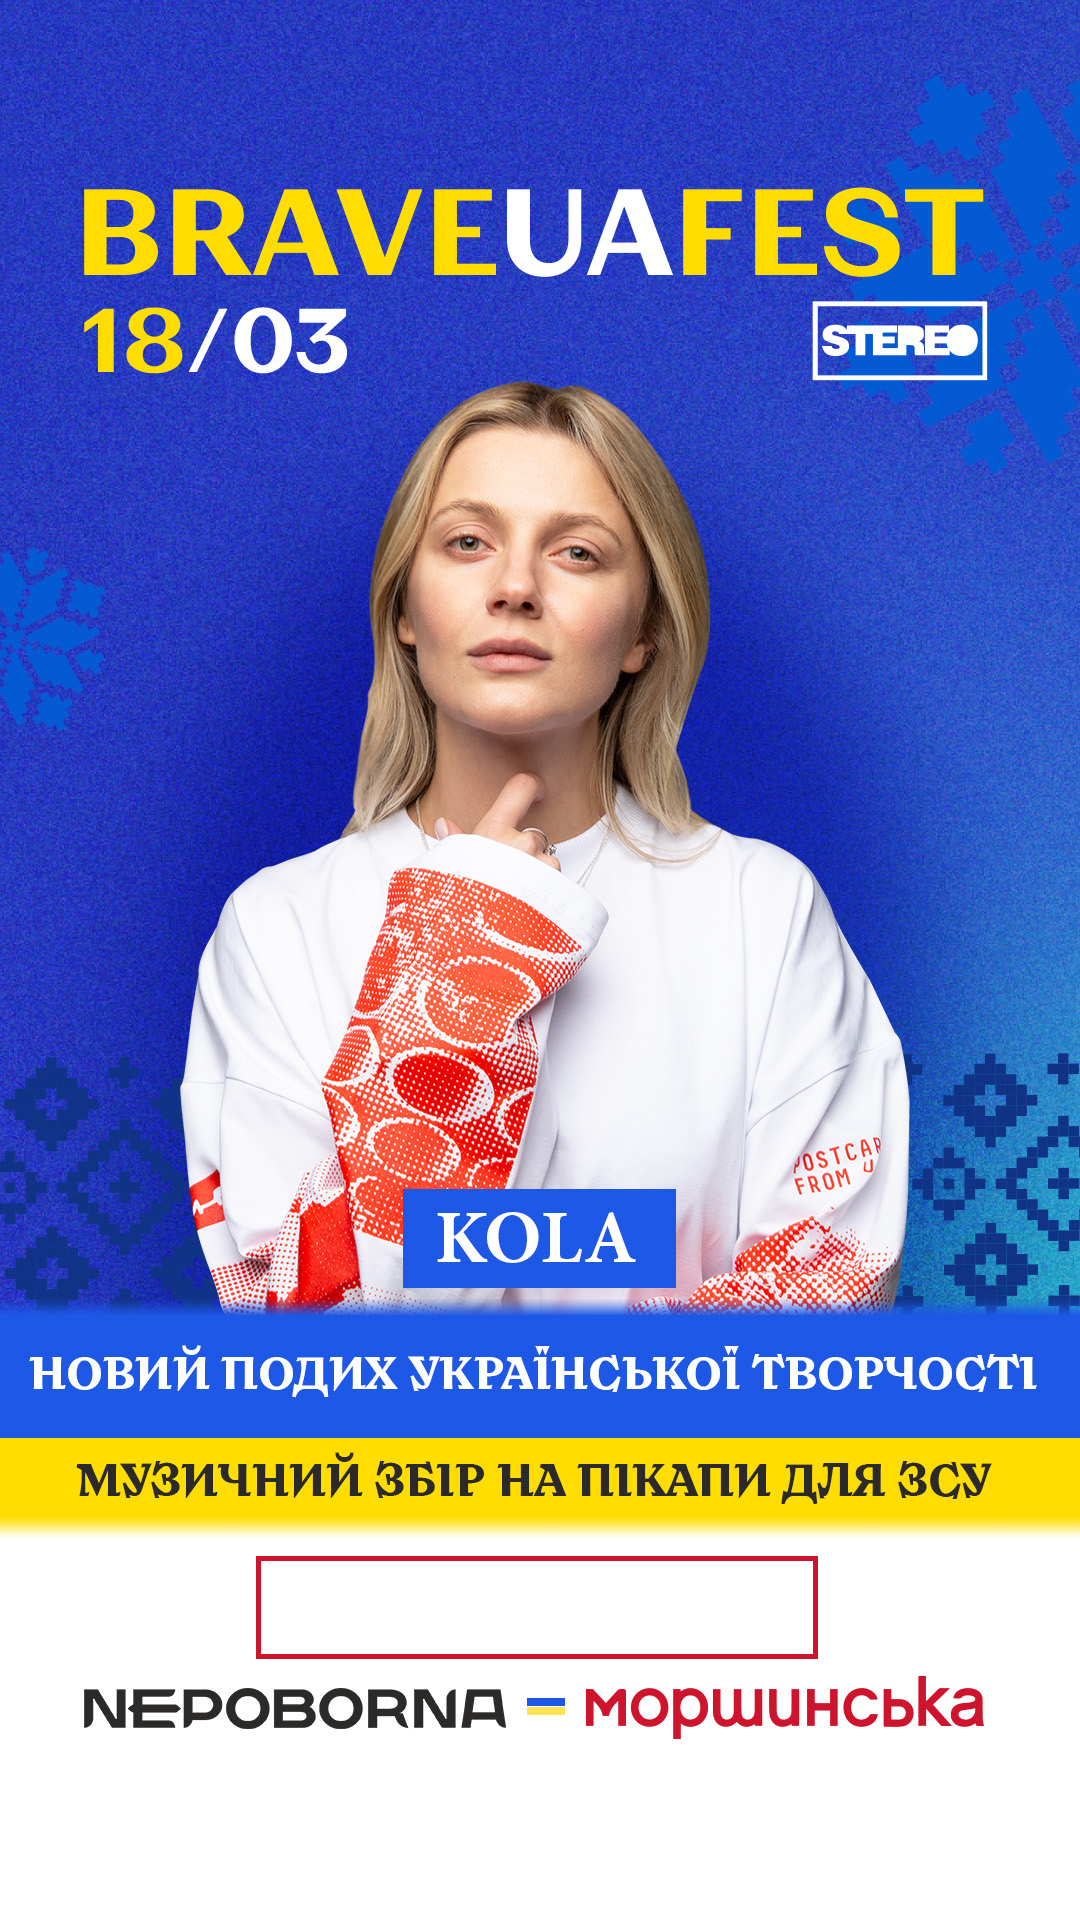 В Киеве пройдет благотворительный фестиваль с участием популярных артистов